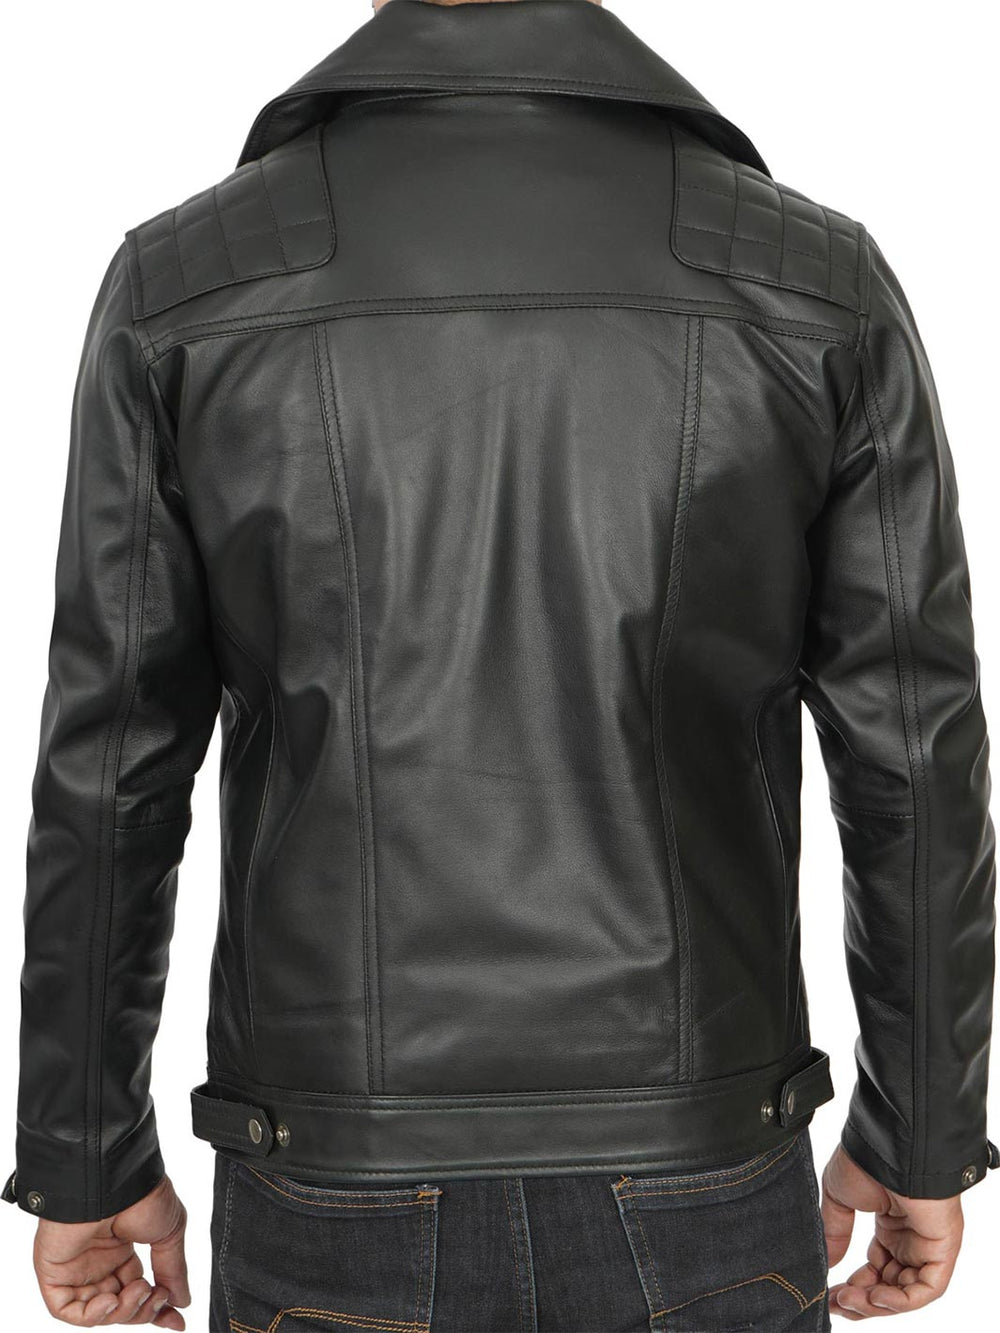 Black Mens Biker Leather Jacket